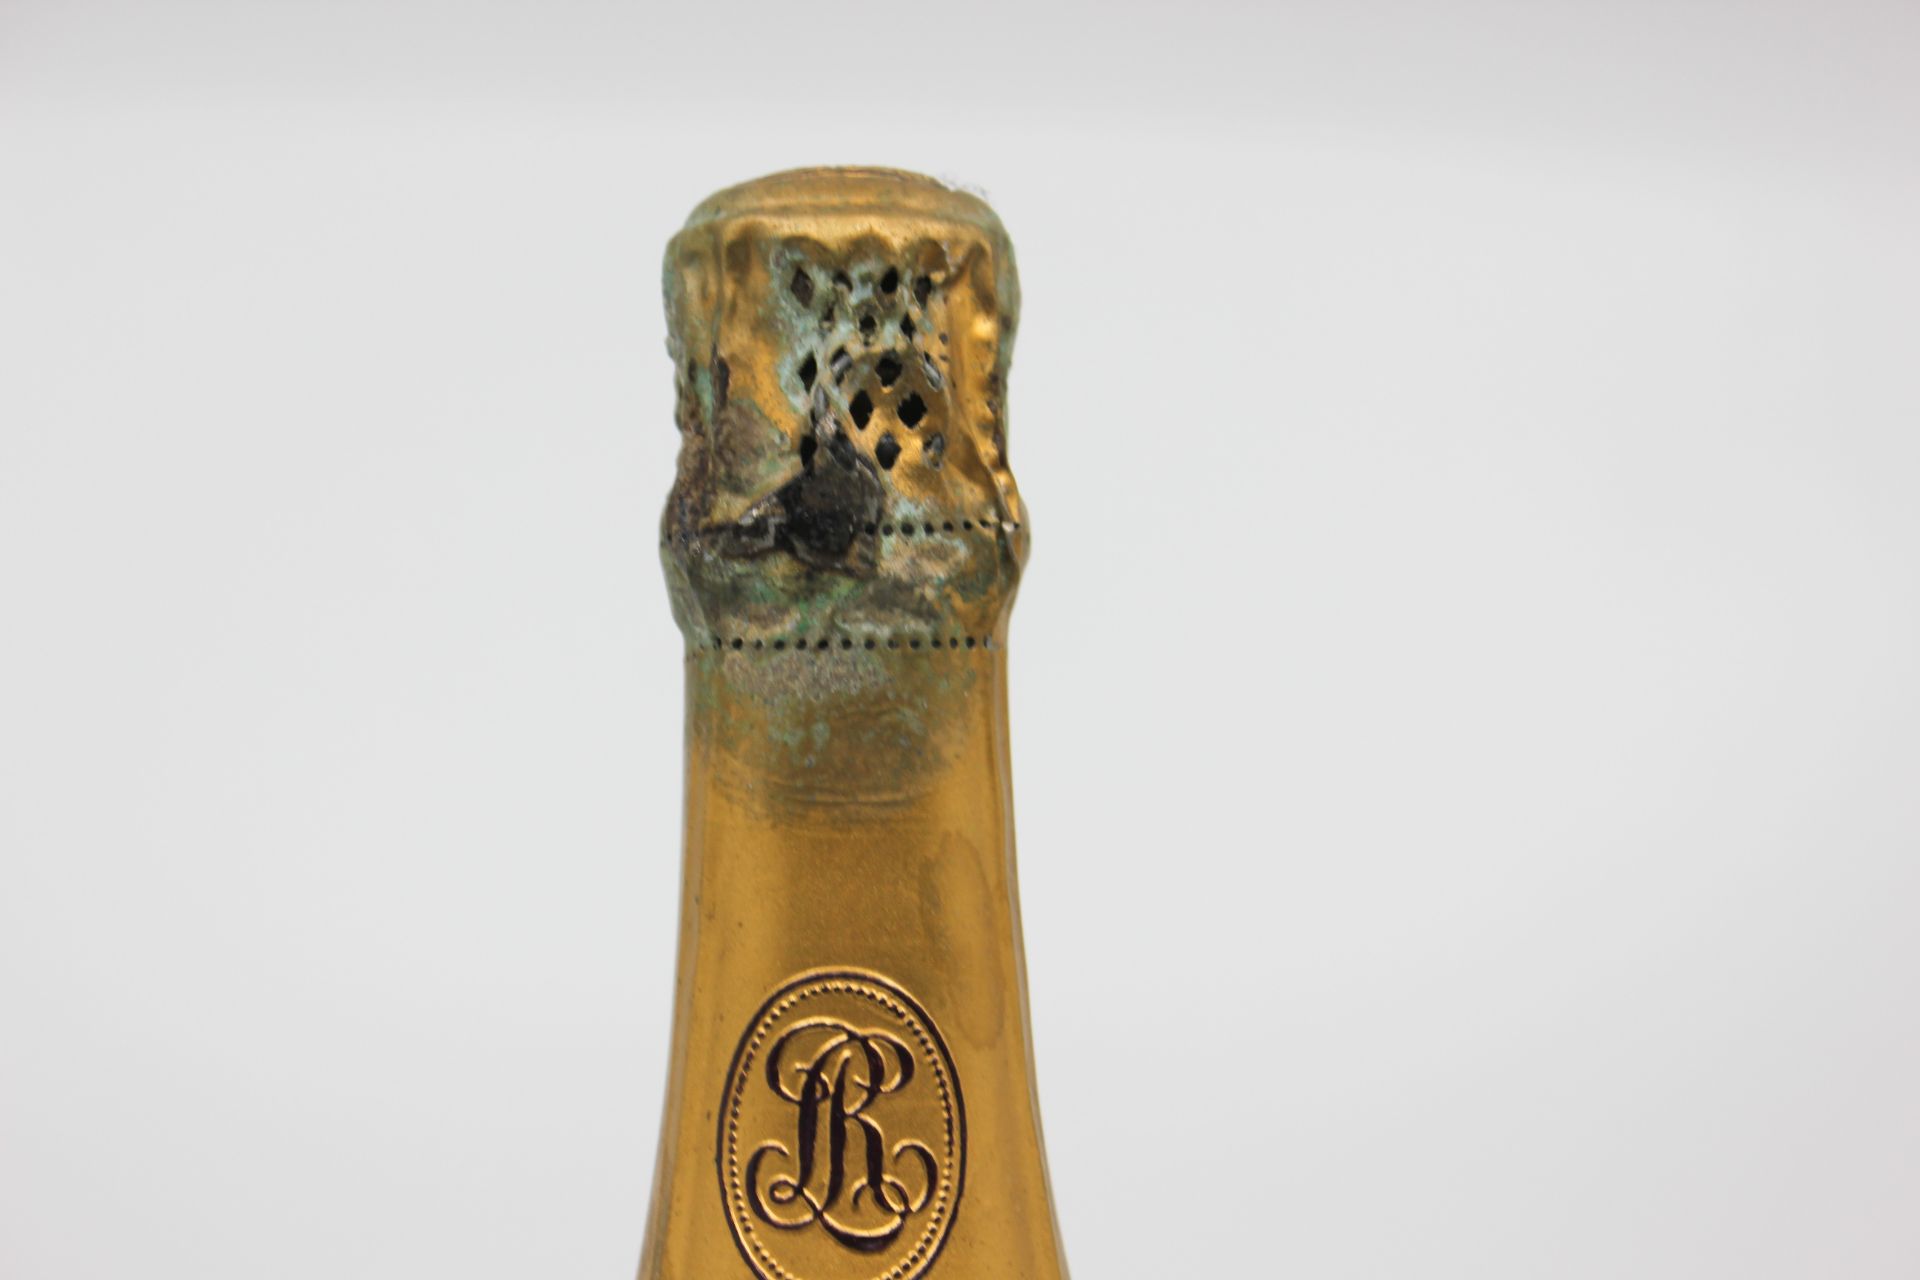 1973 Louis Roederer Cristal Brut Champagne - Image 3 of 14